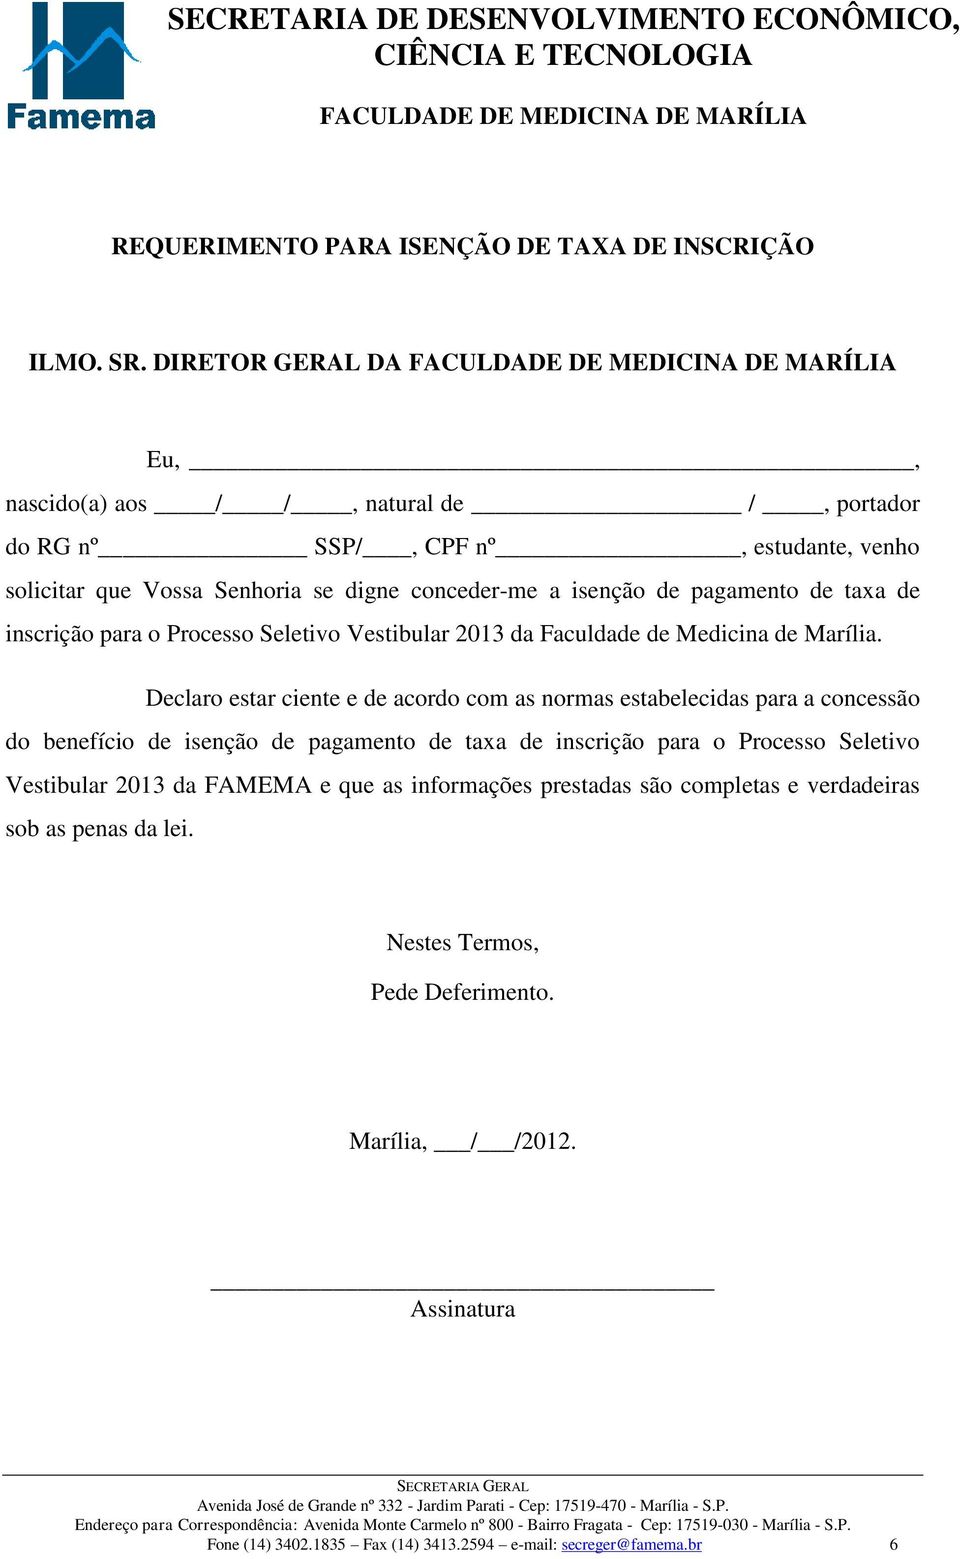 taxa de inscrição para o Processo Seletivo Vestibular 2013 da Faculdade de Medicina de Marília.